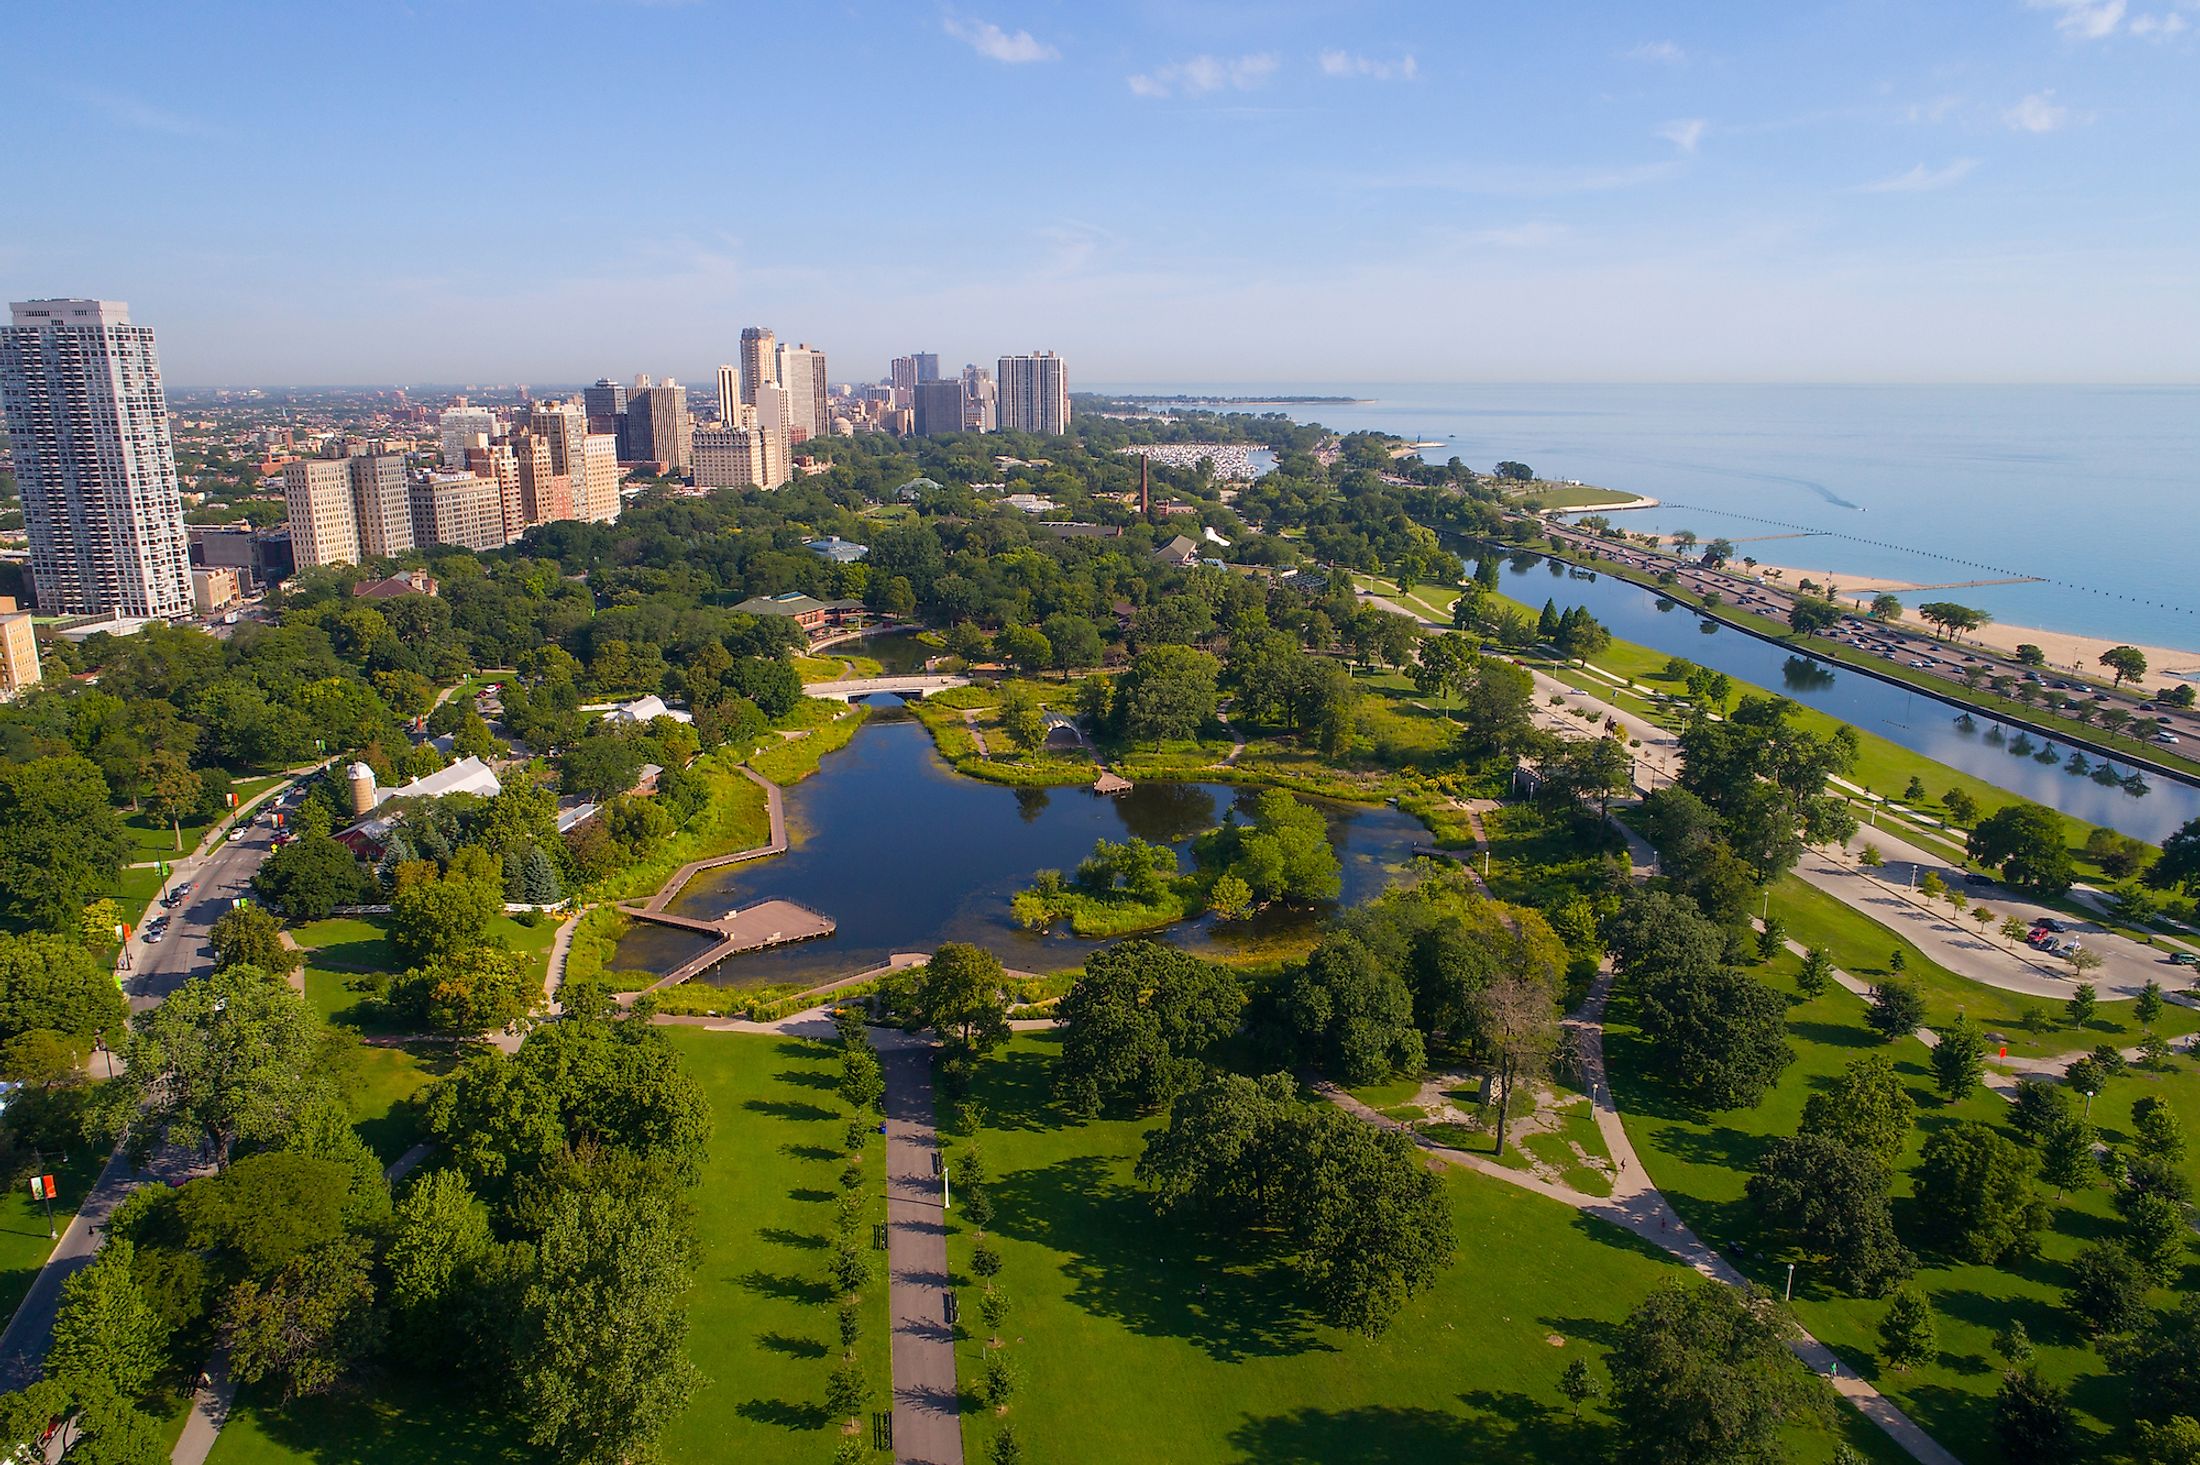 Lincoln Park, Chicago - Wikipedia